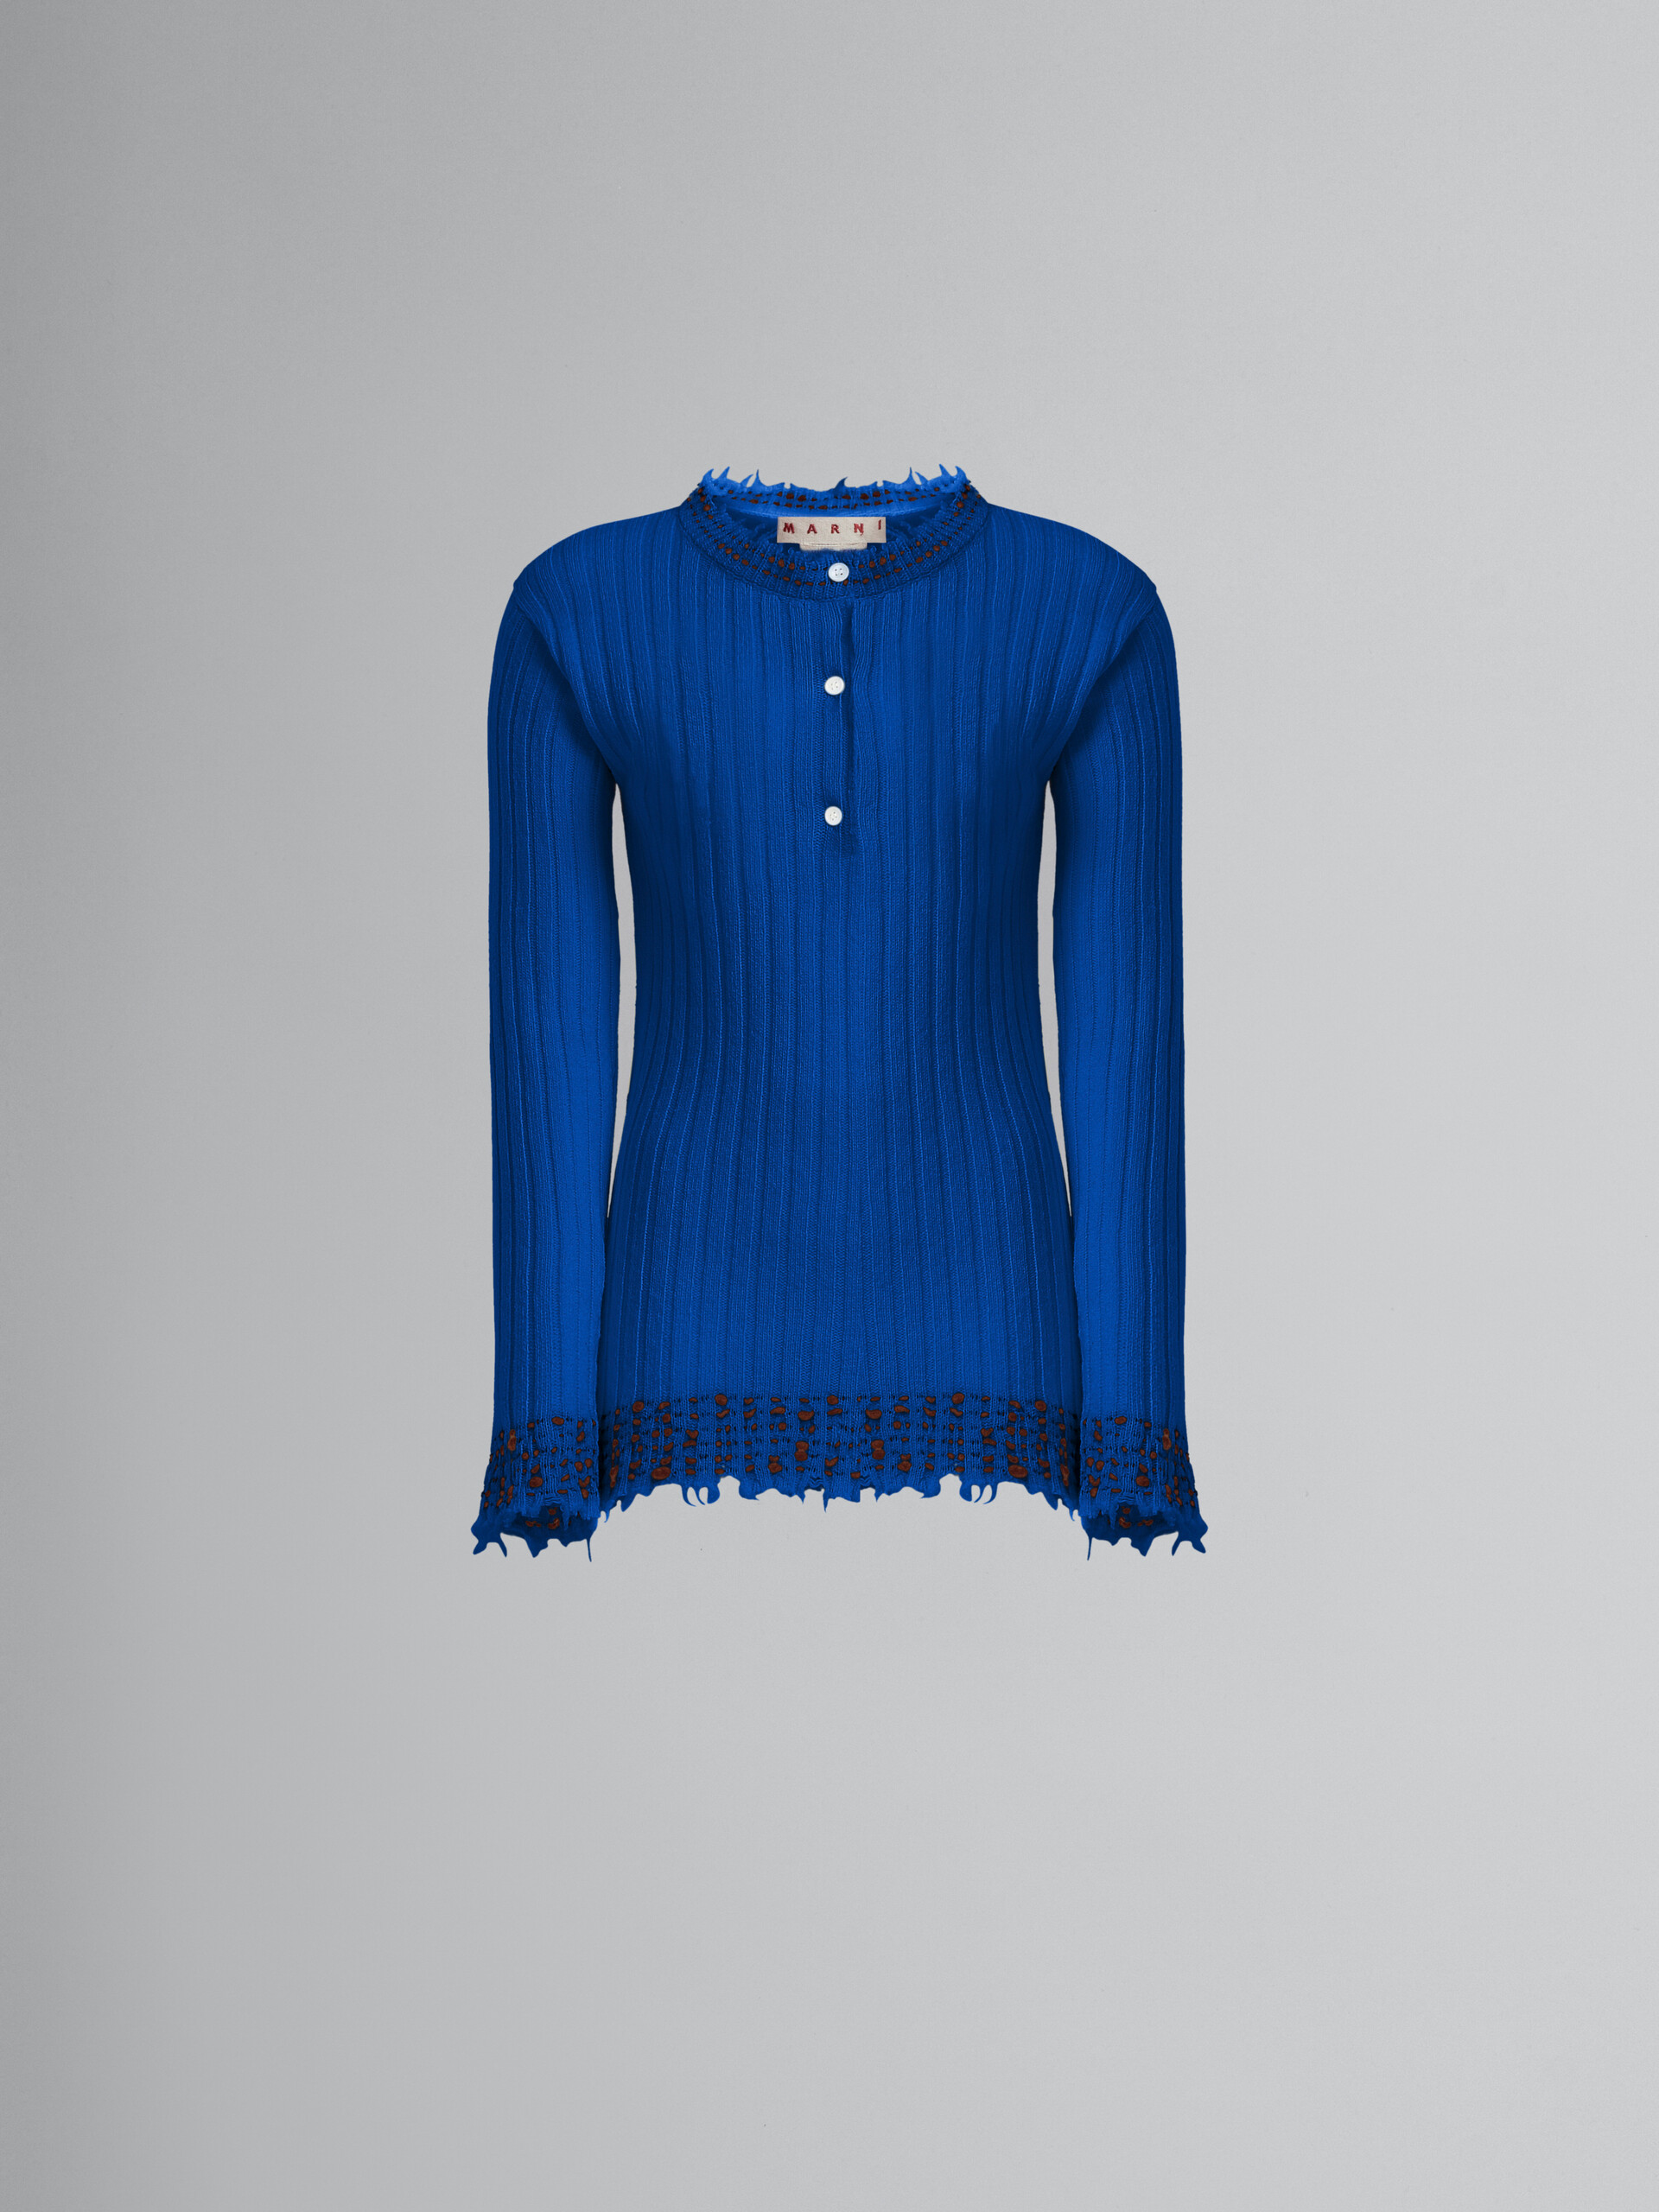 Blauer Strickpullover aus Wolle - Pullover - Image 1